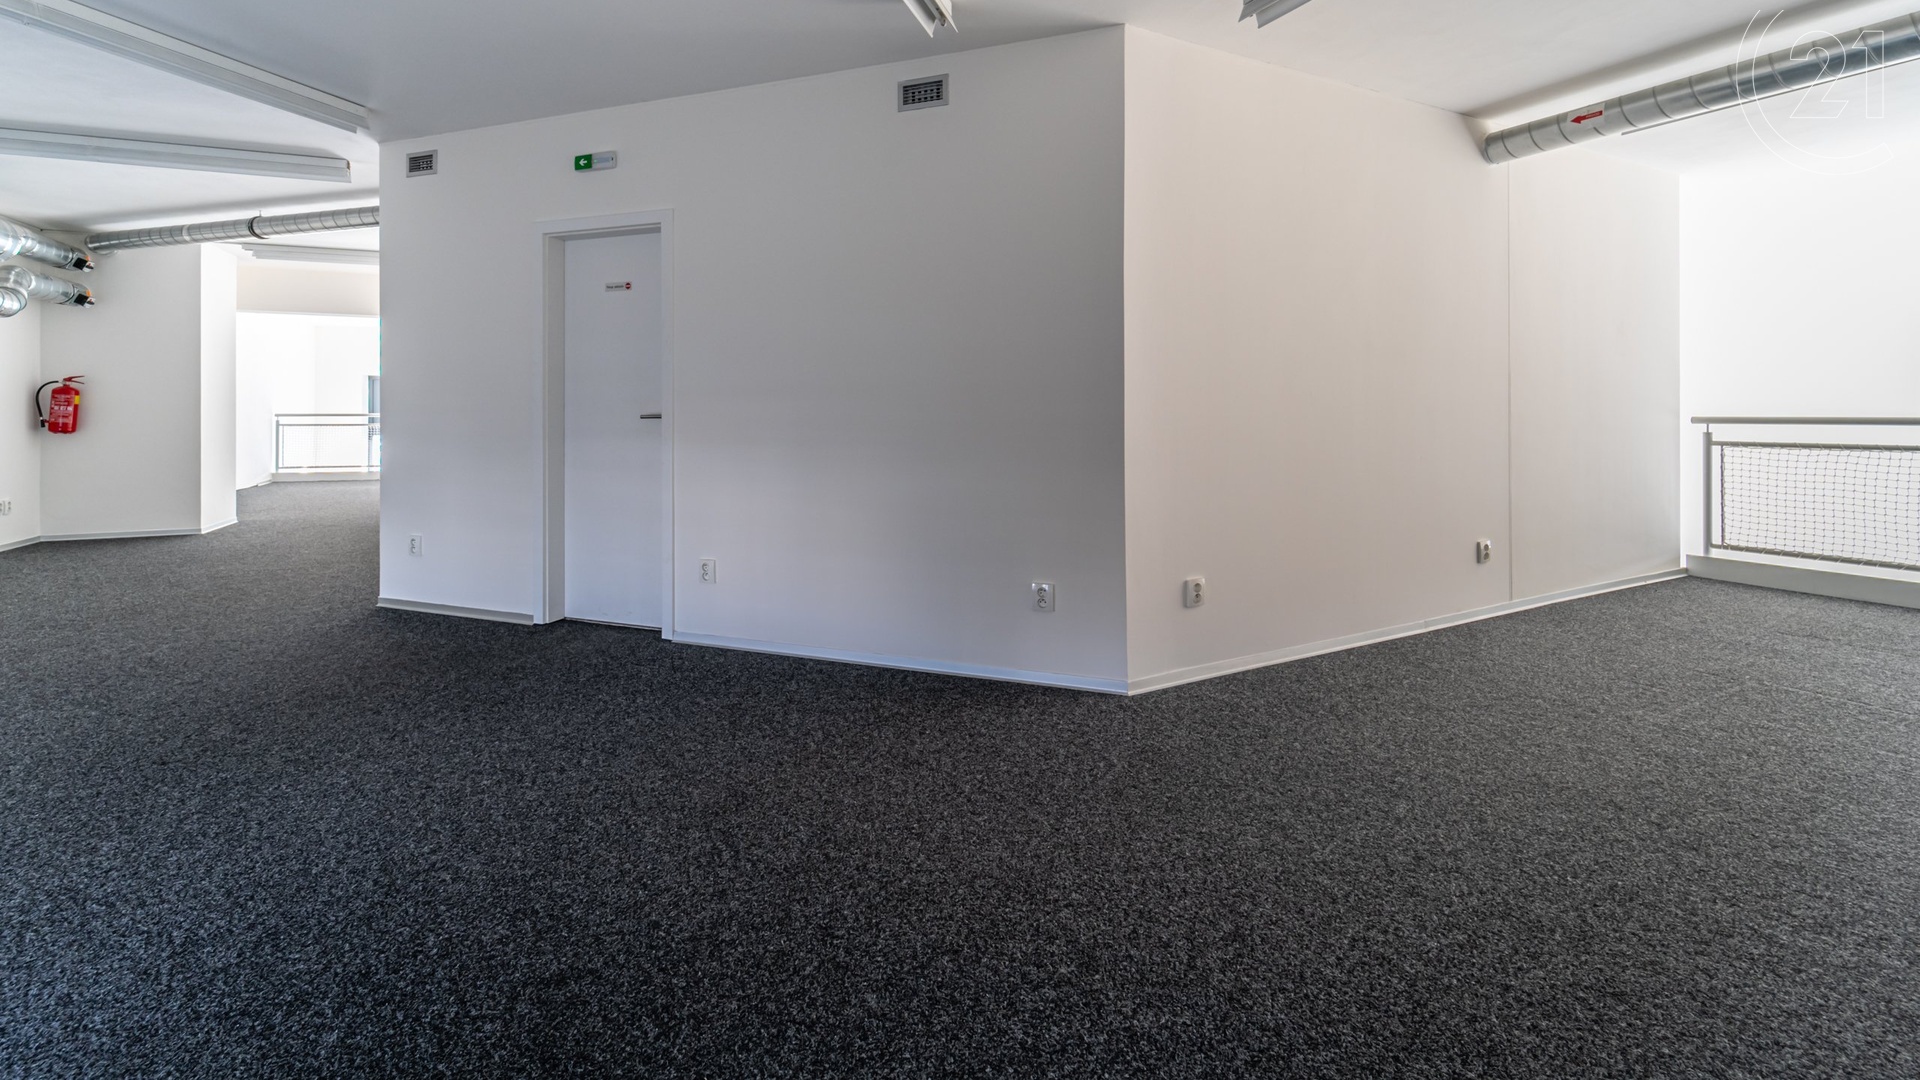 Kancelářské prostory ke koupi o celkové ploše 232m2 v rohovém domě na frekventované ulici Mlýnská v Brně